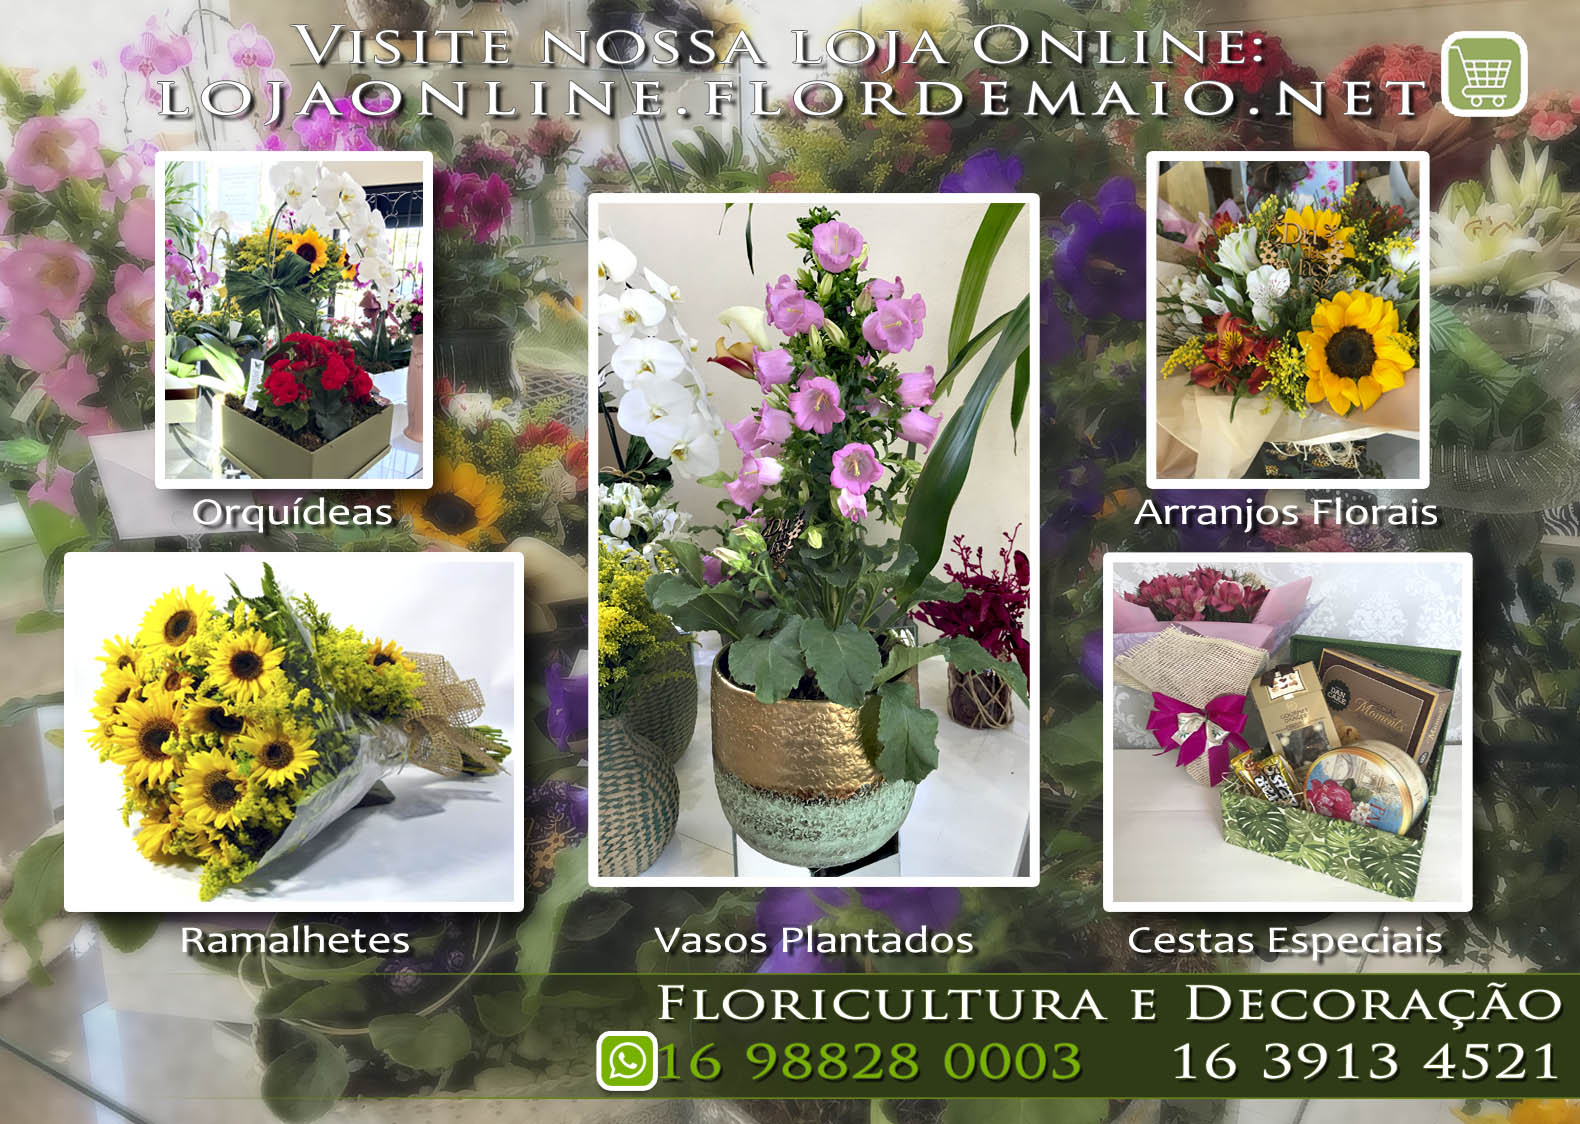 Flor de Maio Floricultura e Decoração Ribeirão Preto - 